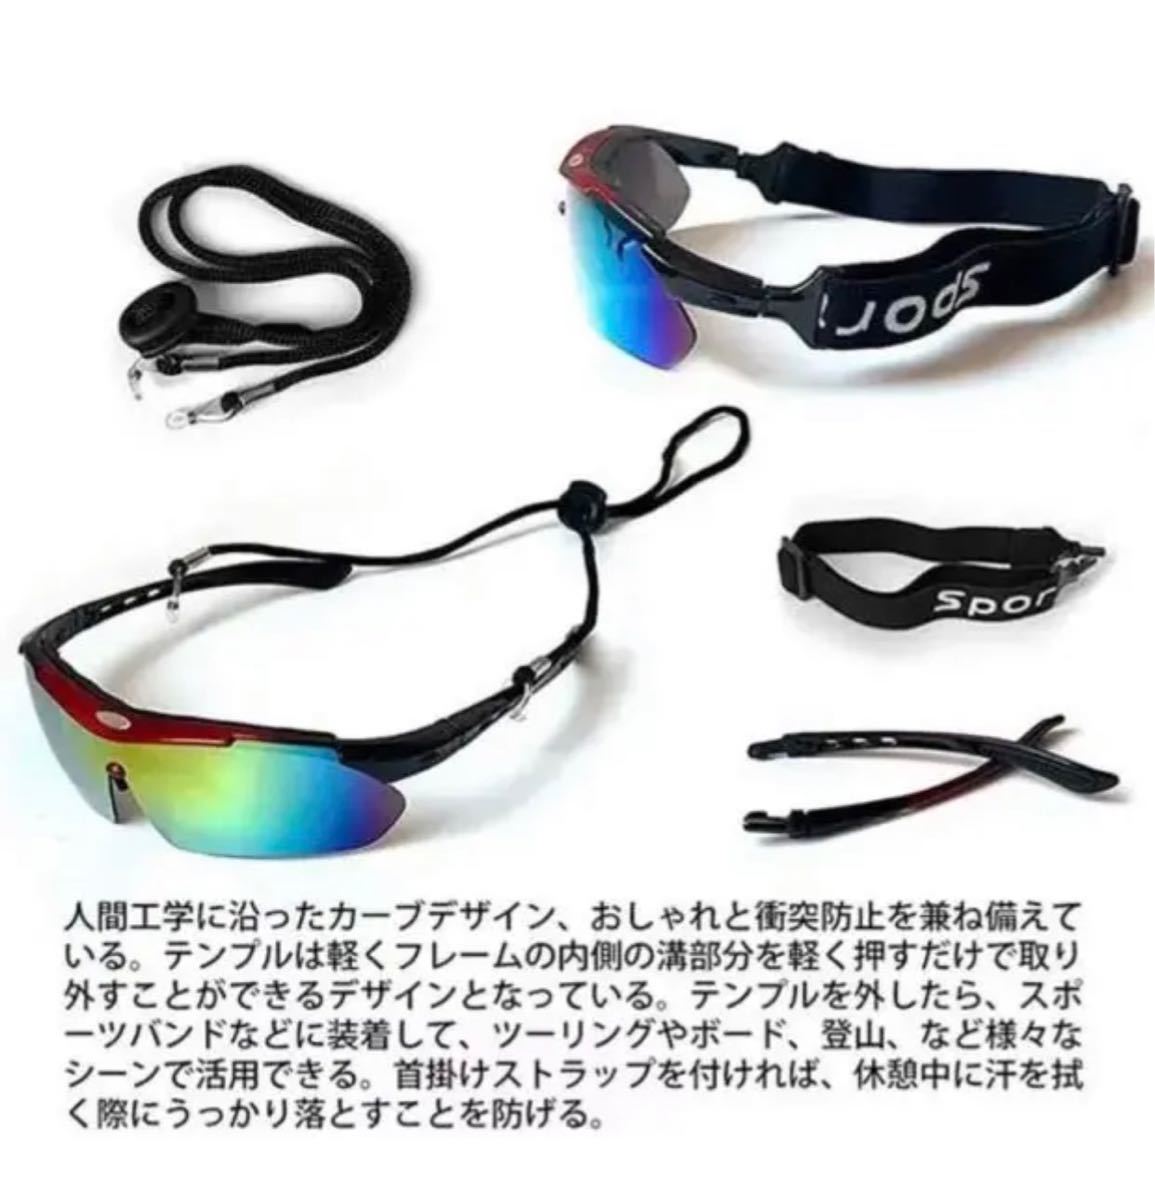 新品偏光レンズ スポーツサングラス フルセット専用交換レンズ5枚 メンズ レディース